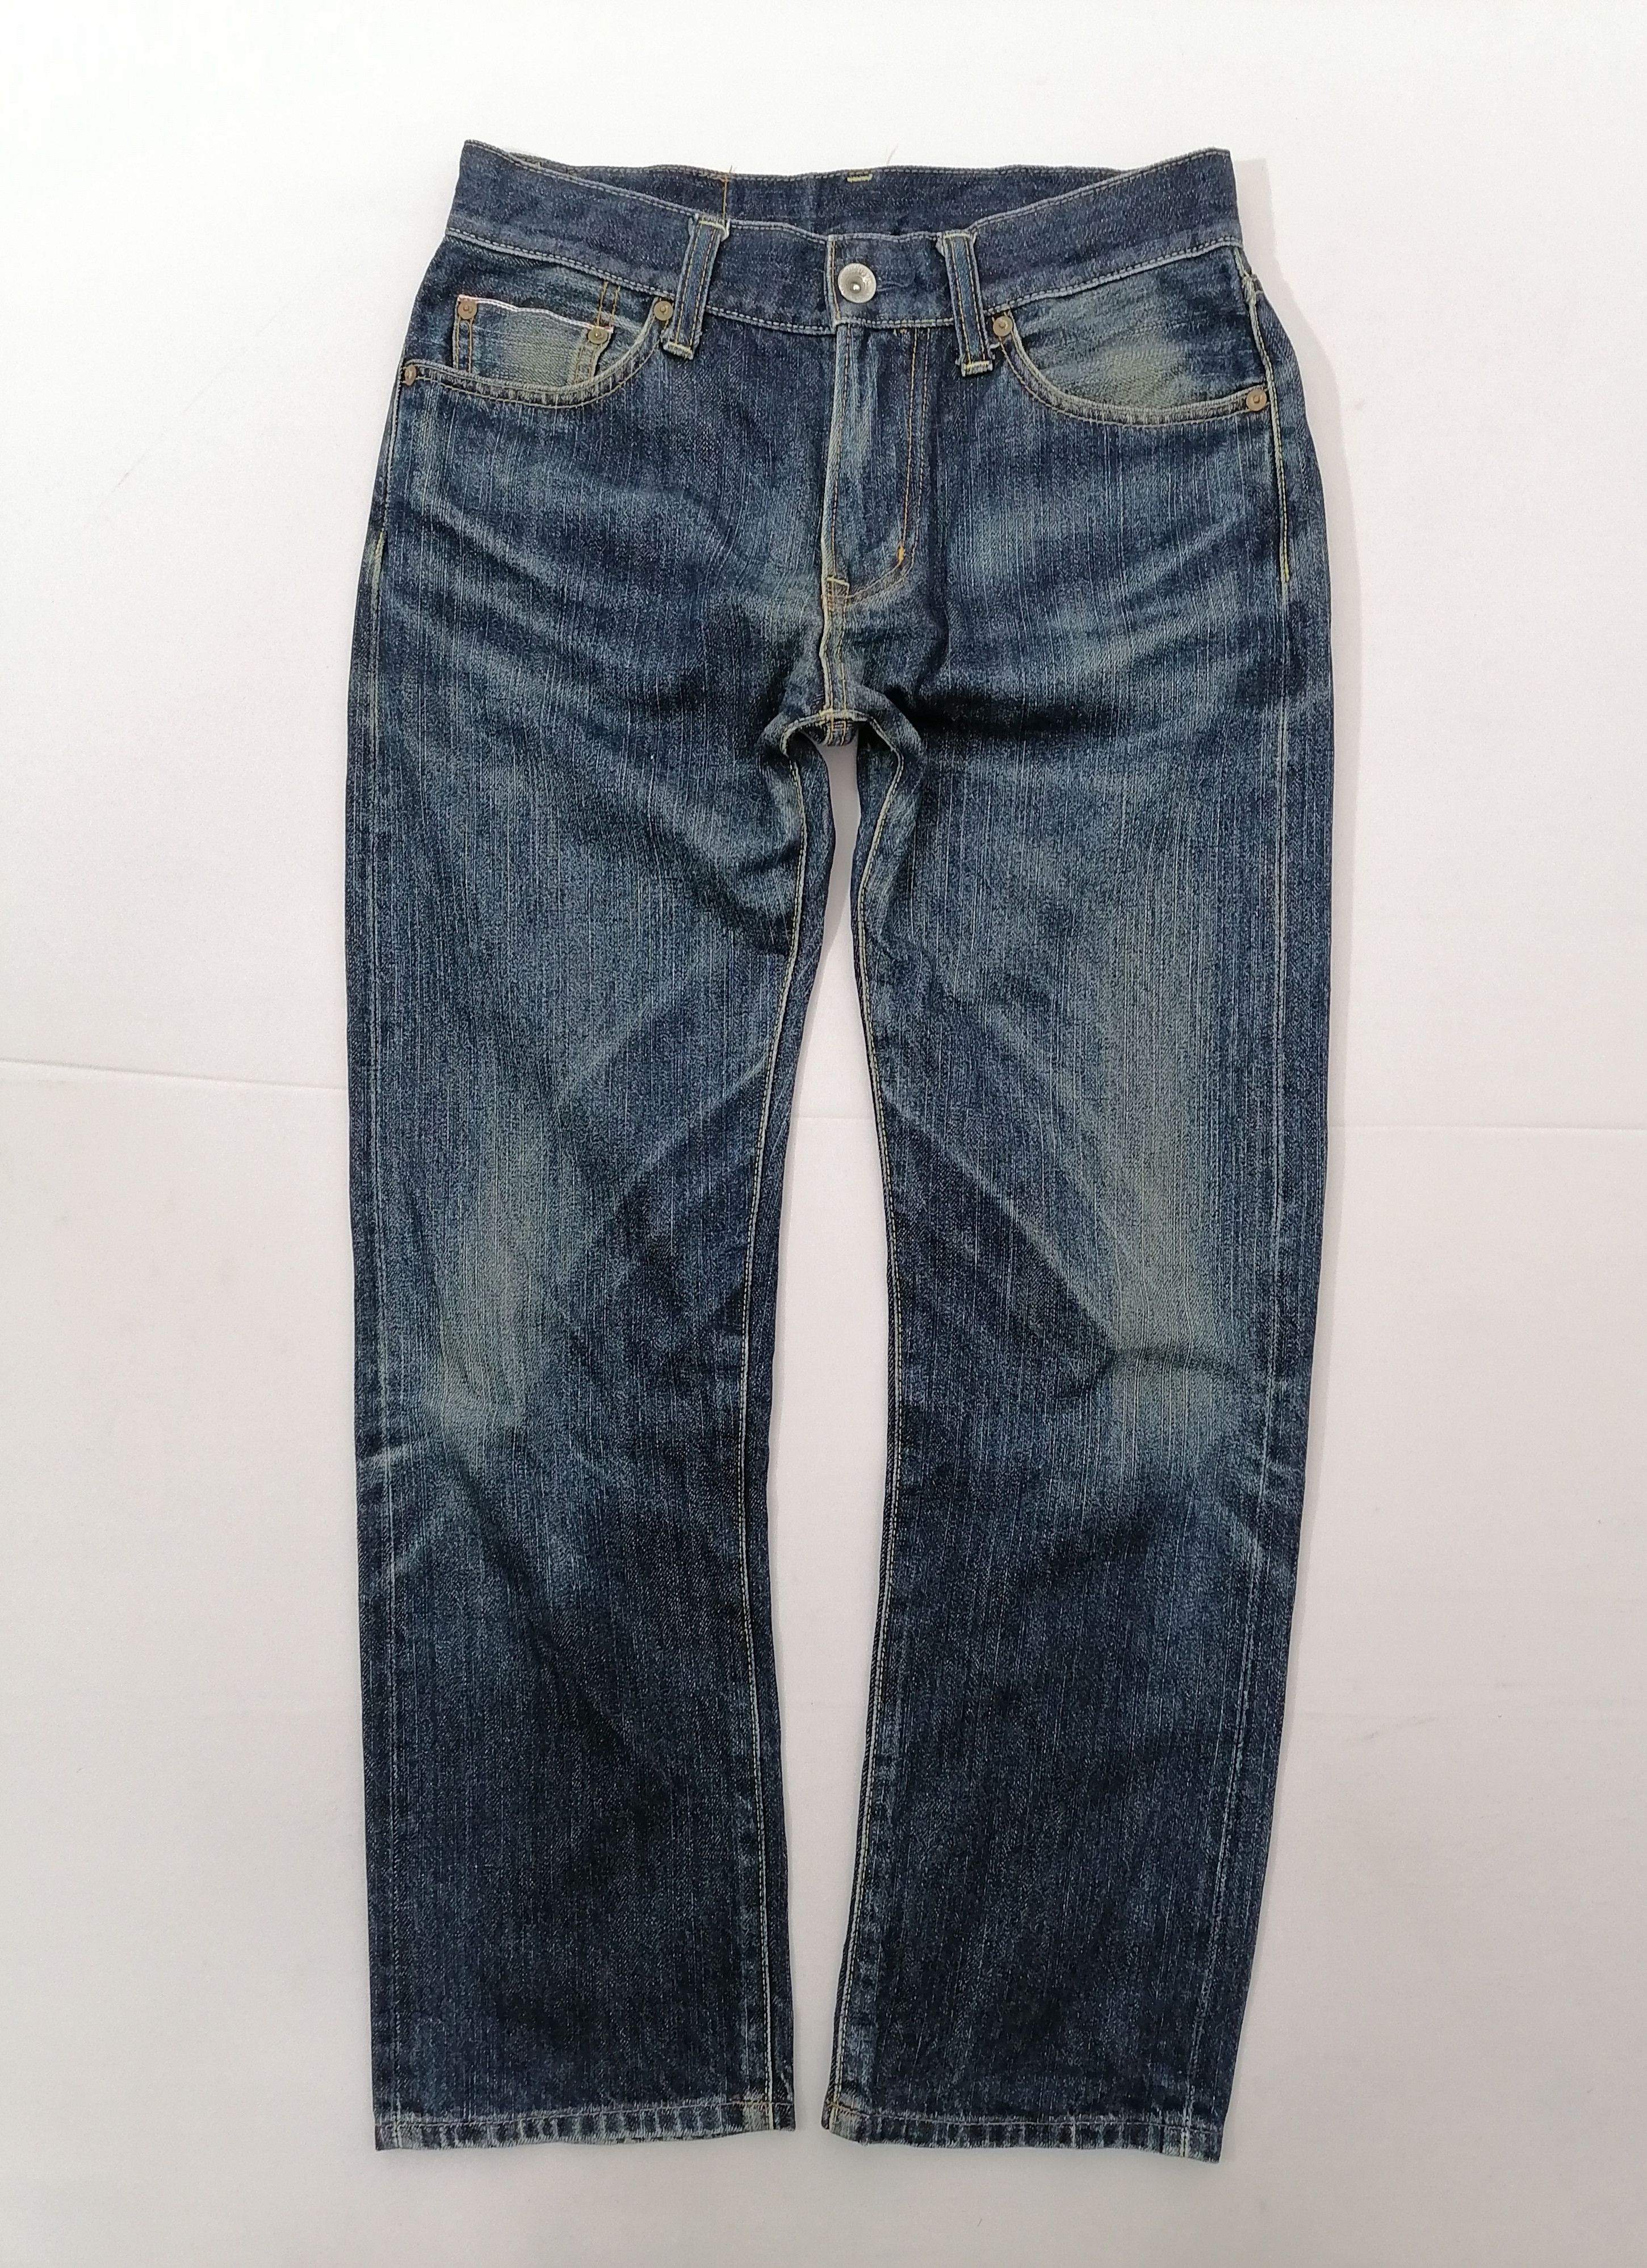 Uniqlo Uniqlo Regular Fit Straight Selvedge Denim Jeans Size US 32 / EU 48 - 2 Preview